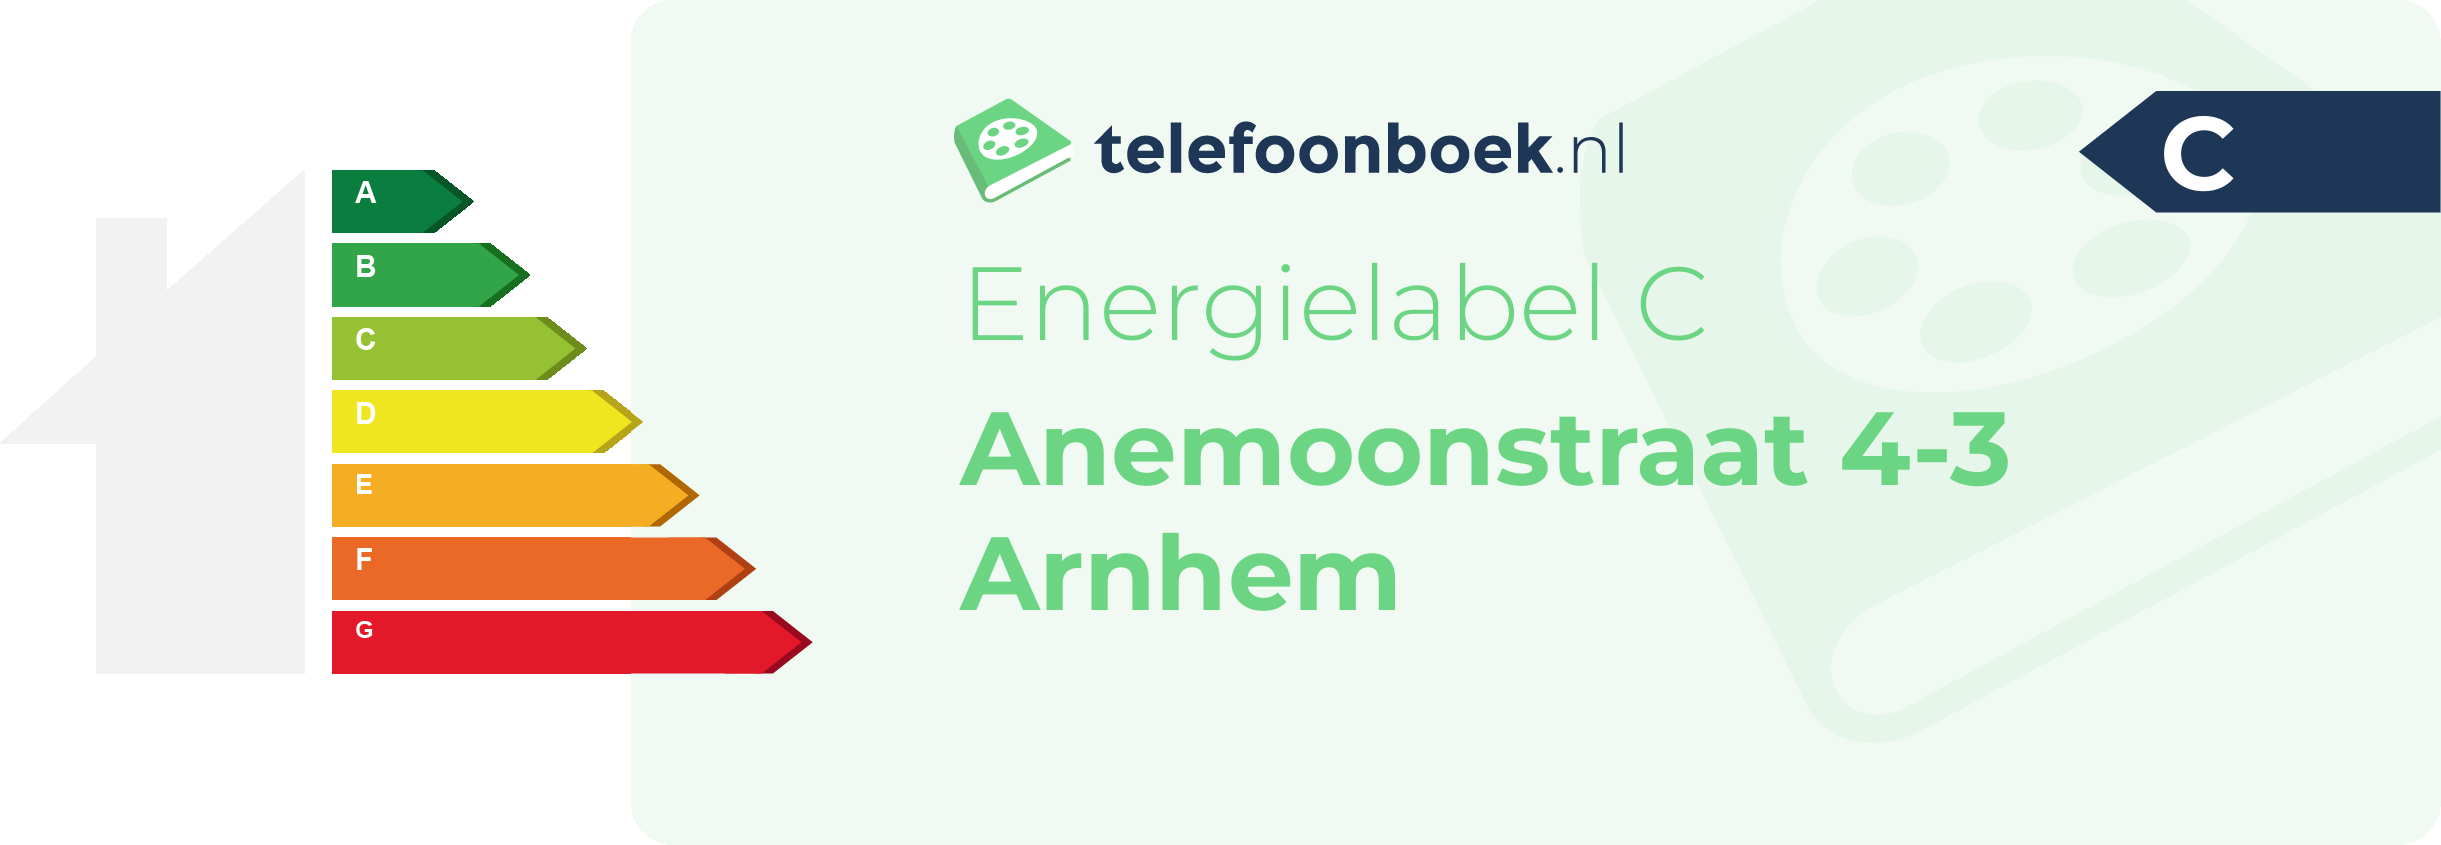 Energielabel Anemoonstraat 4-3 Arnhem